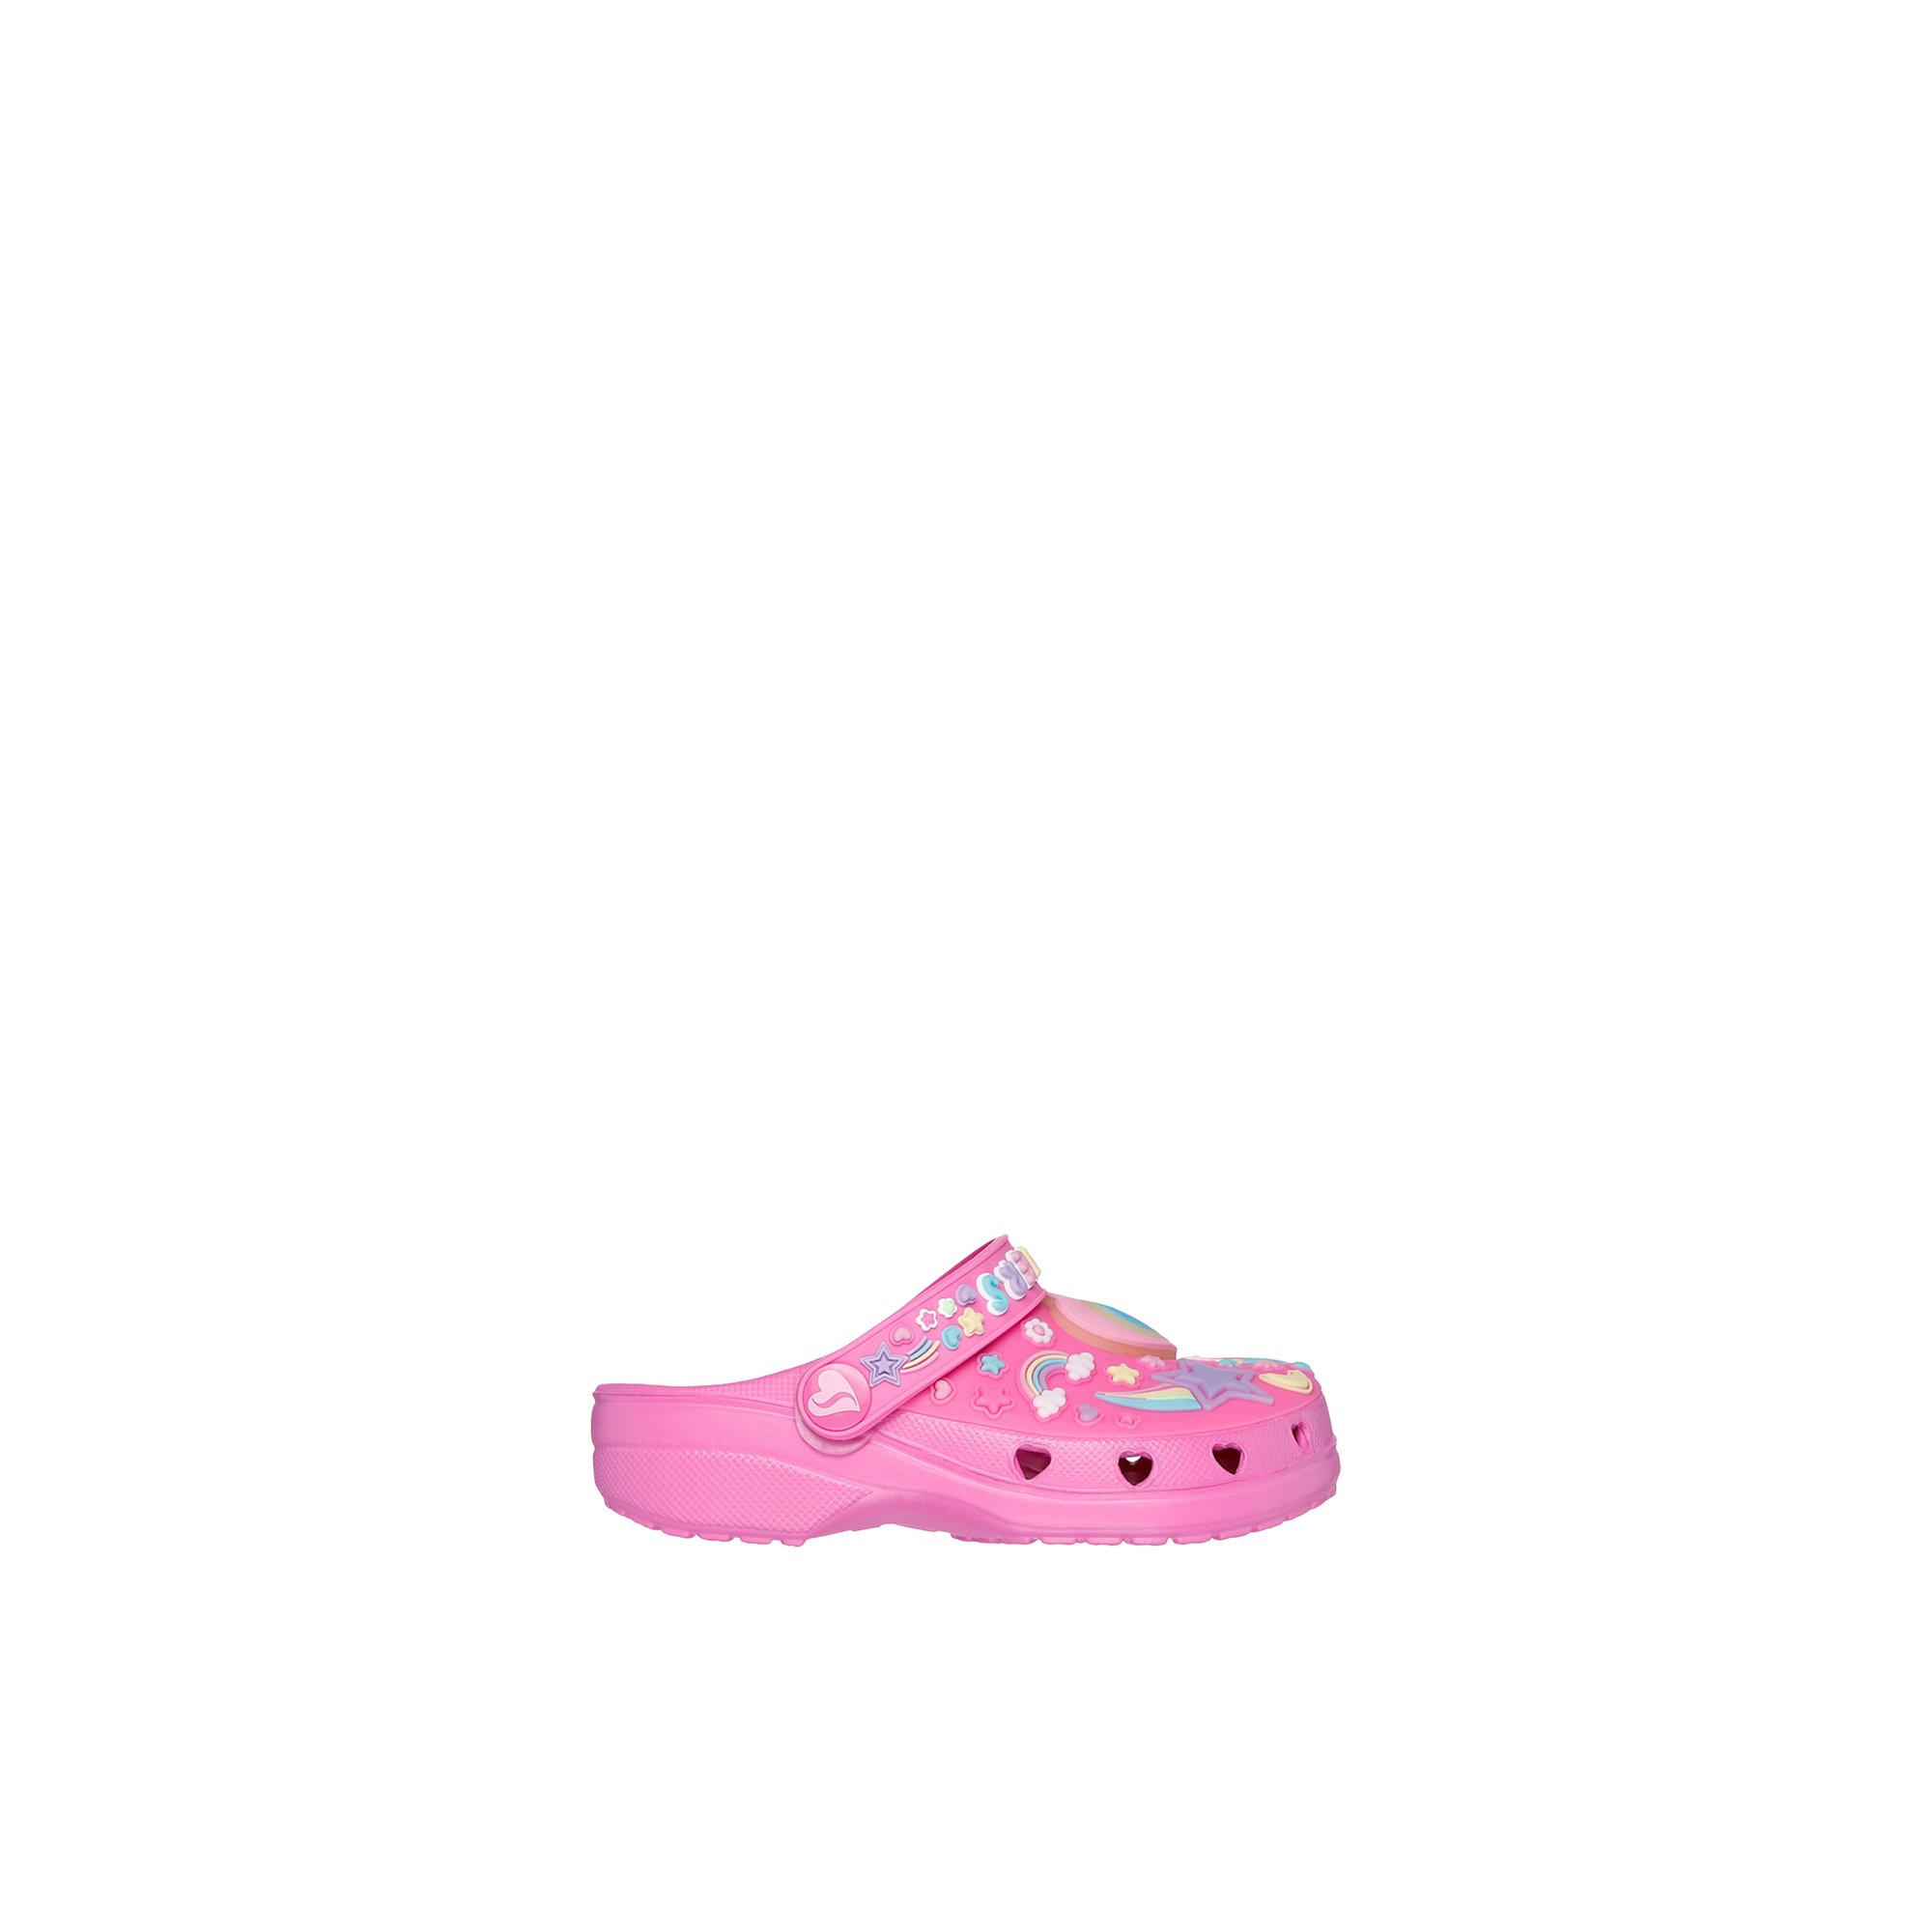 Skechers Heart-ig - Kids Toddler Shoes Pink